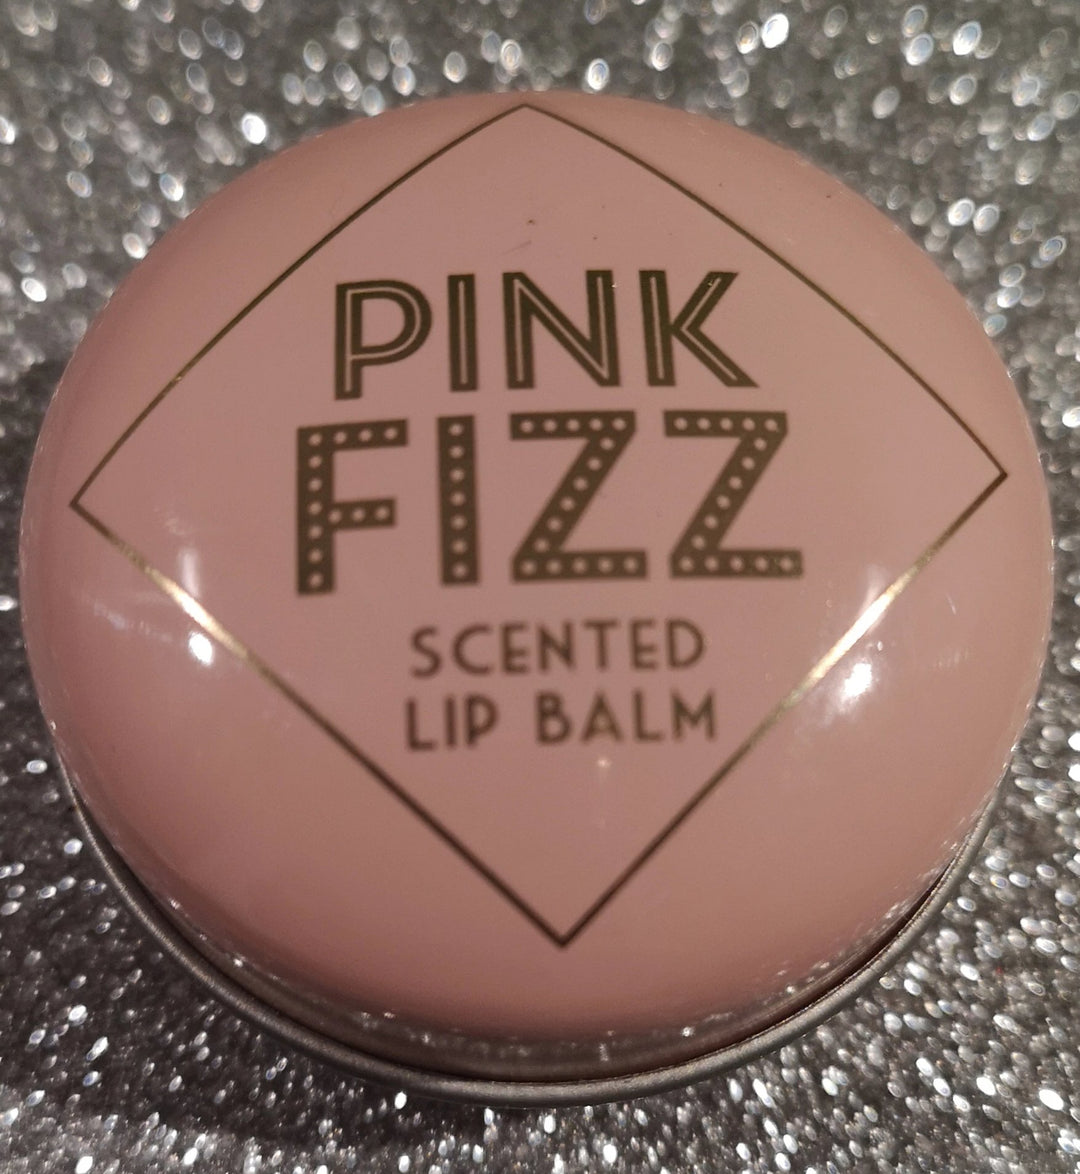 Pink fizz / Prosecco Lip Balm 10 ml - British Moments